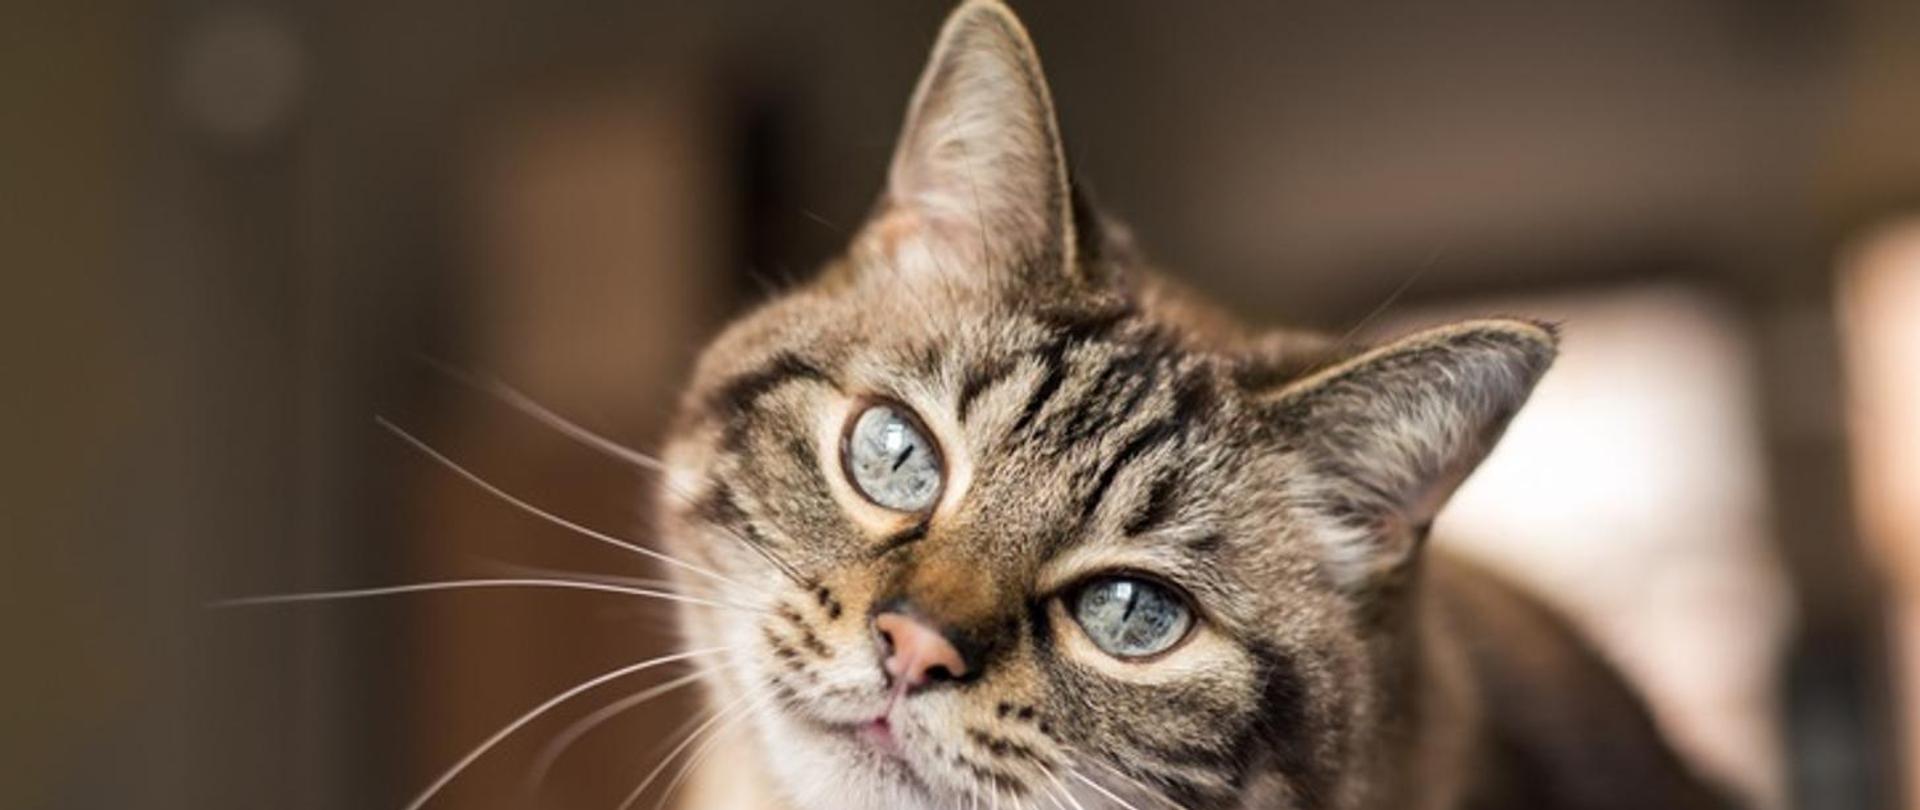 Pręgowany kot z niebieskimi oczami patrzy w obiektyw. Za nim niewyraźne brązowo-białe tło.